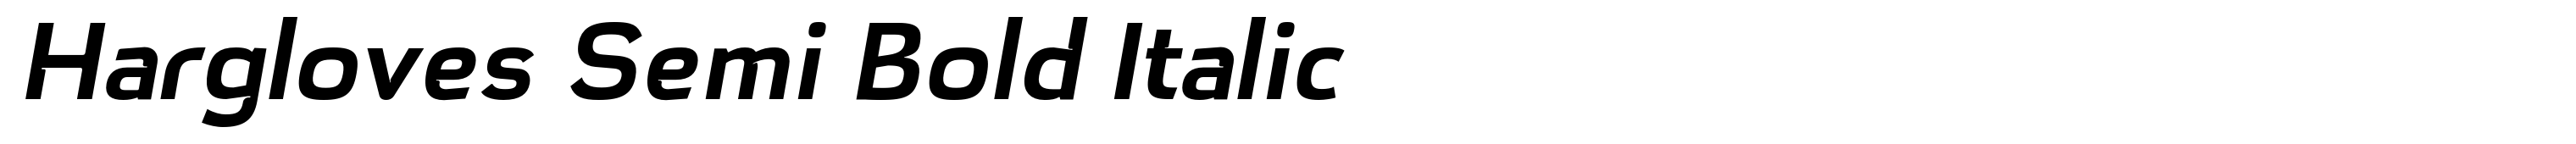 Hargloves Semi Bold Italic